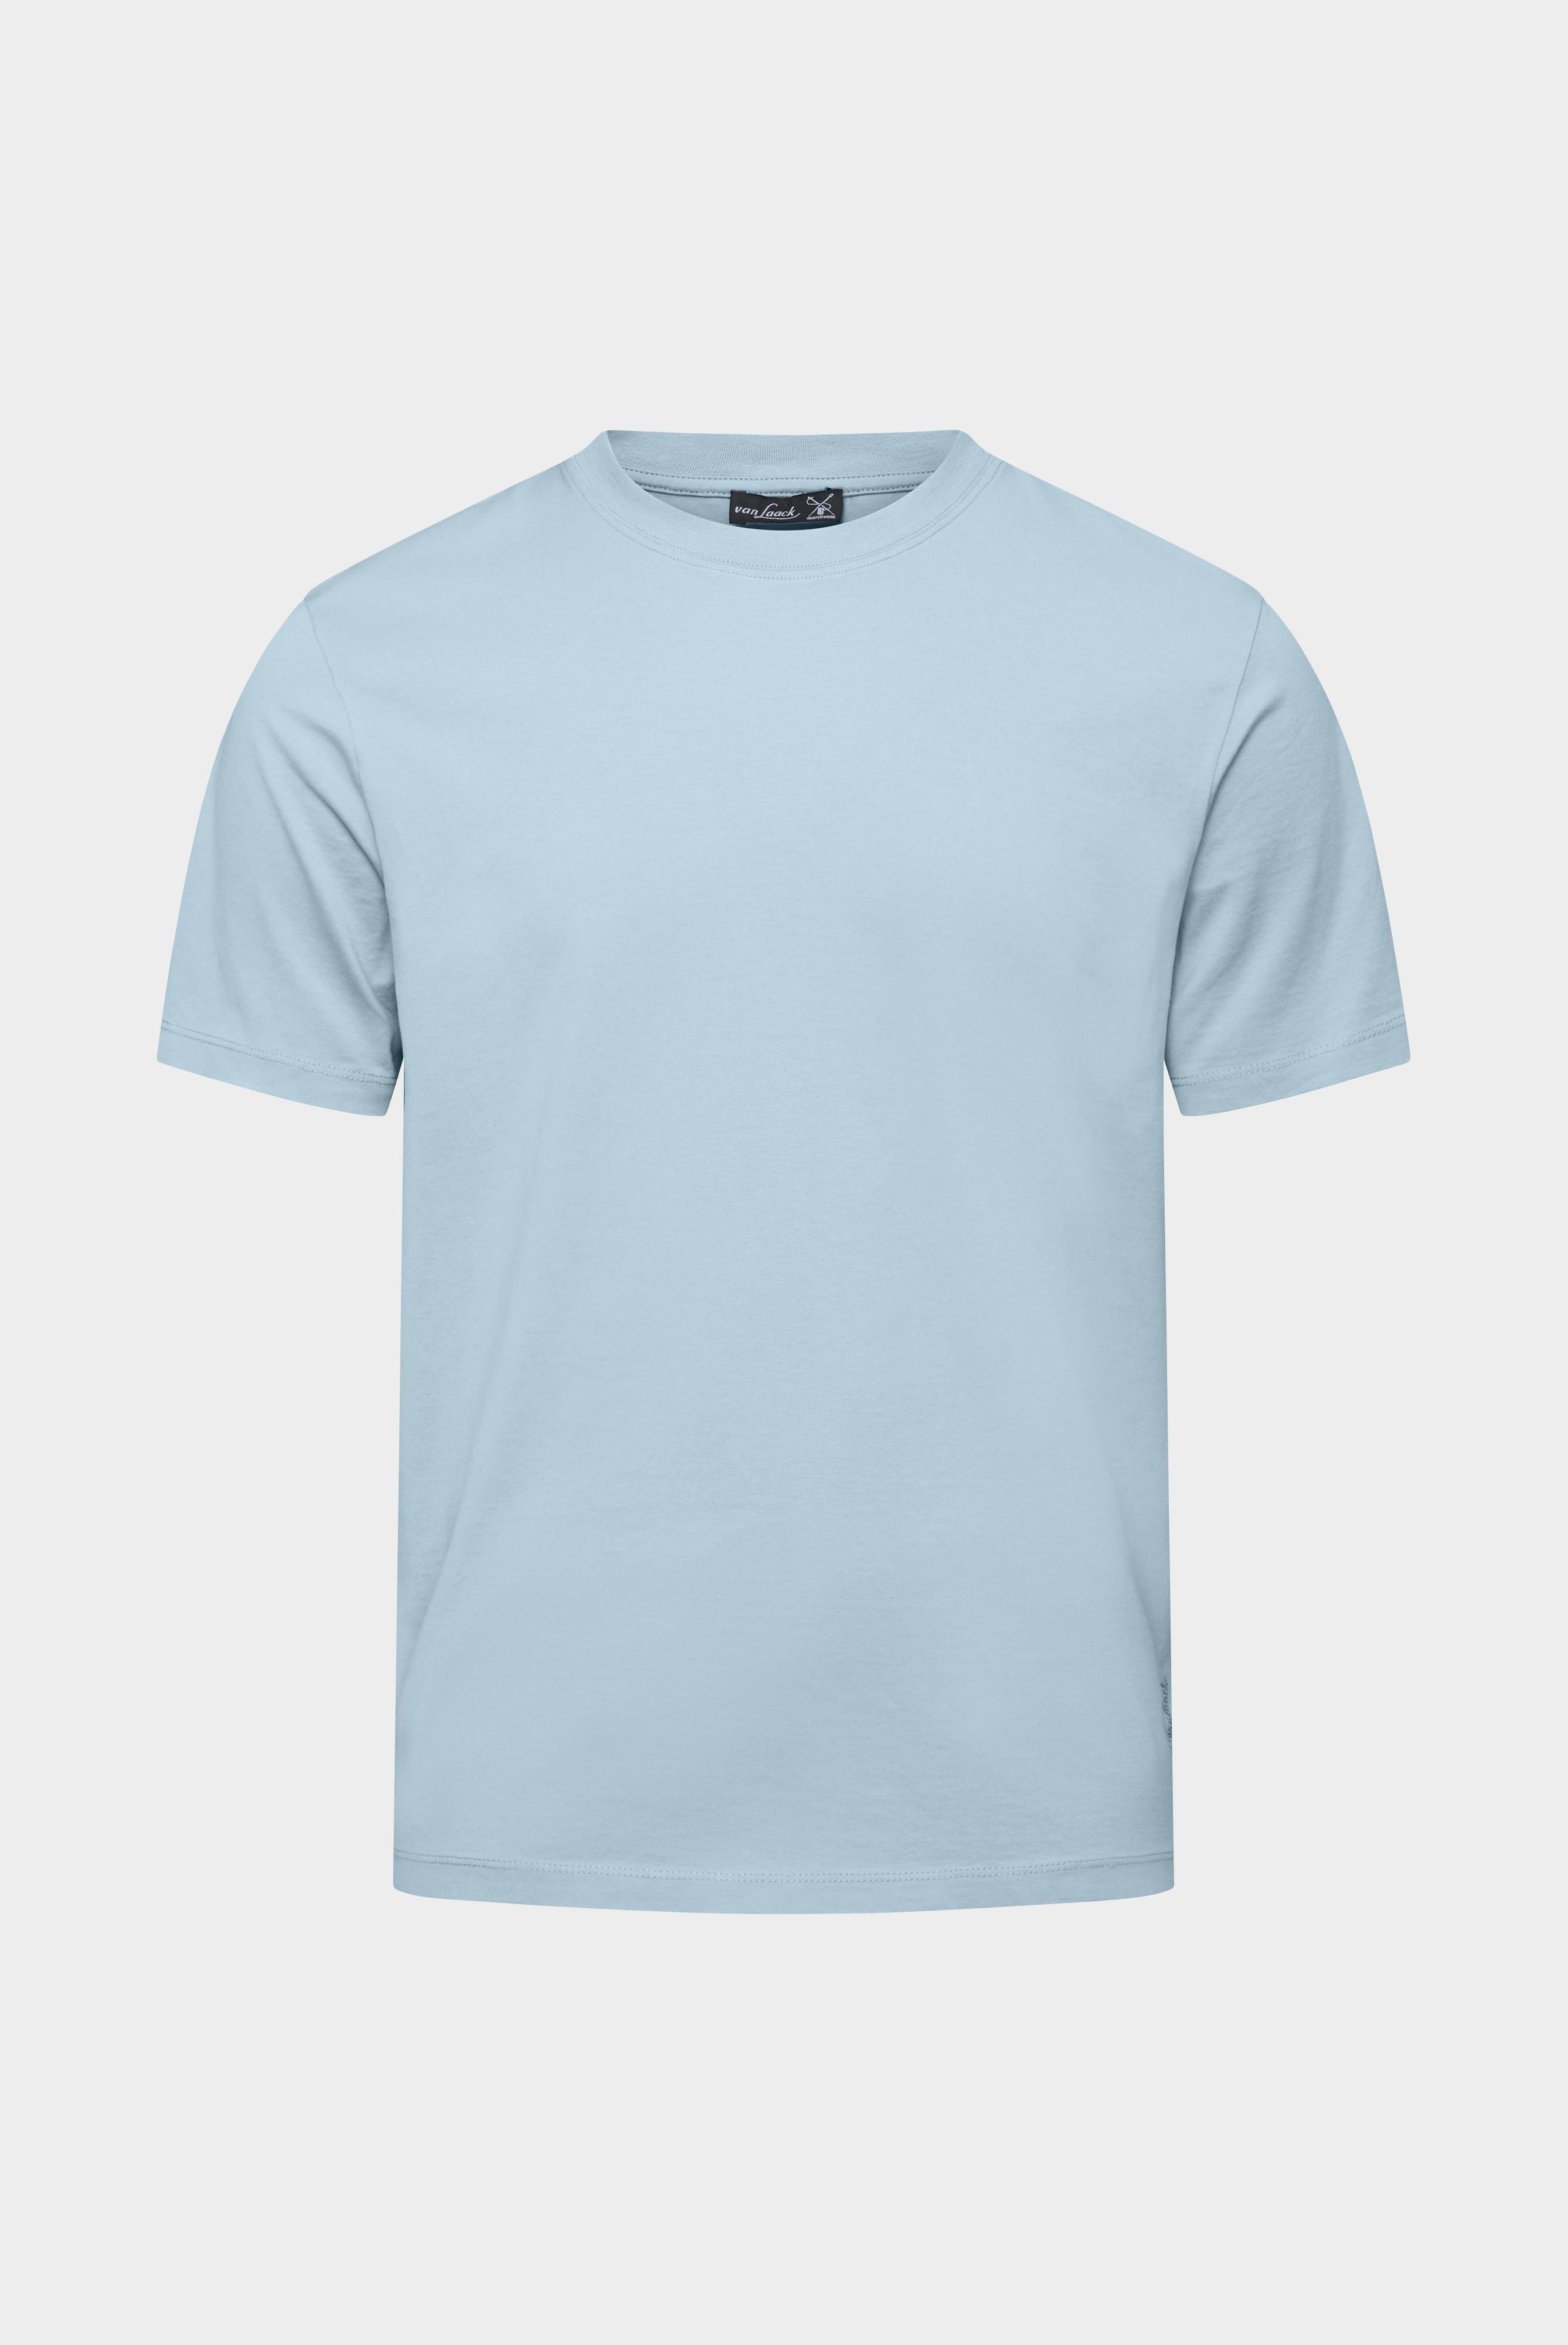 T-Shirts+T-Shirt aus langstapeliger Baumwolle+20.1660..Z20044.720.S